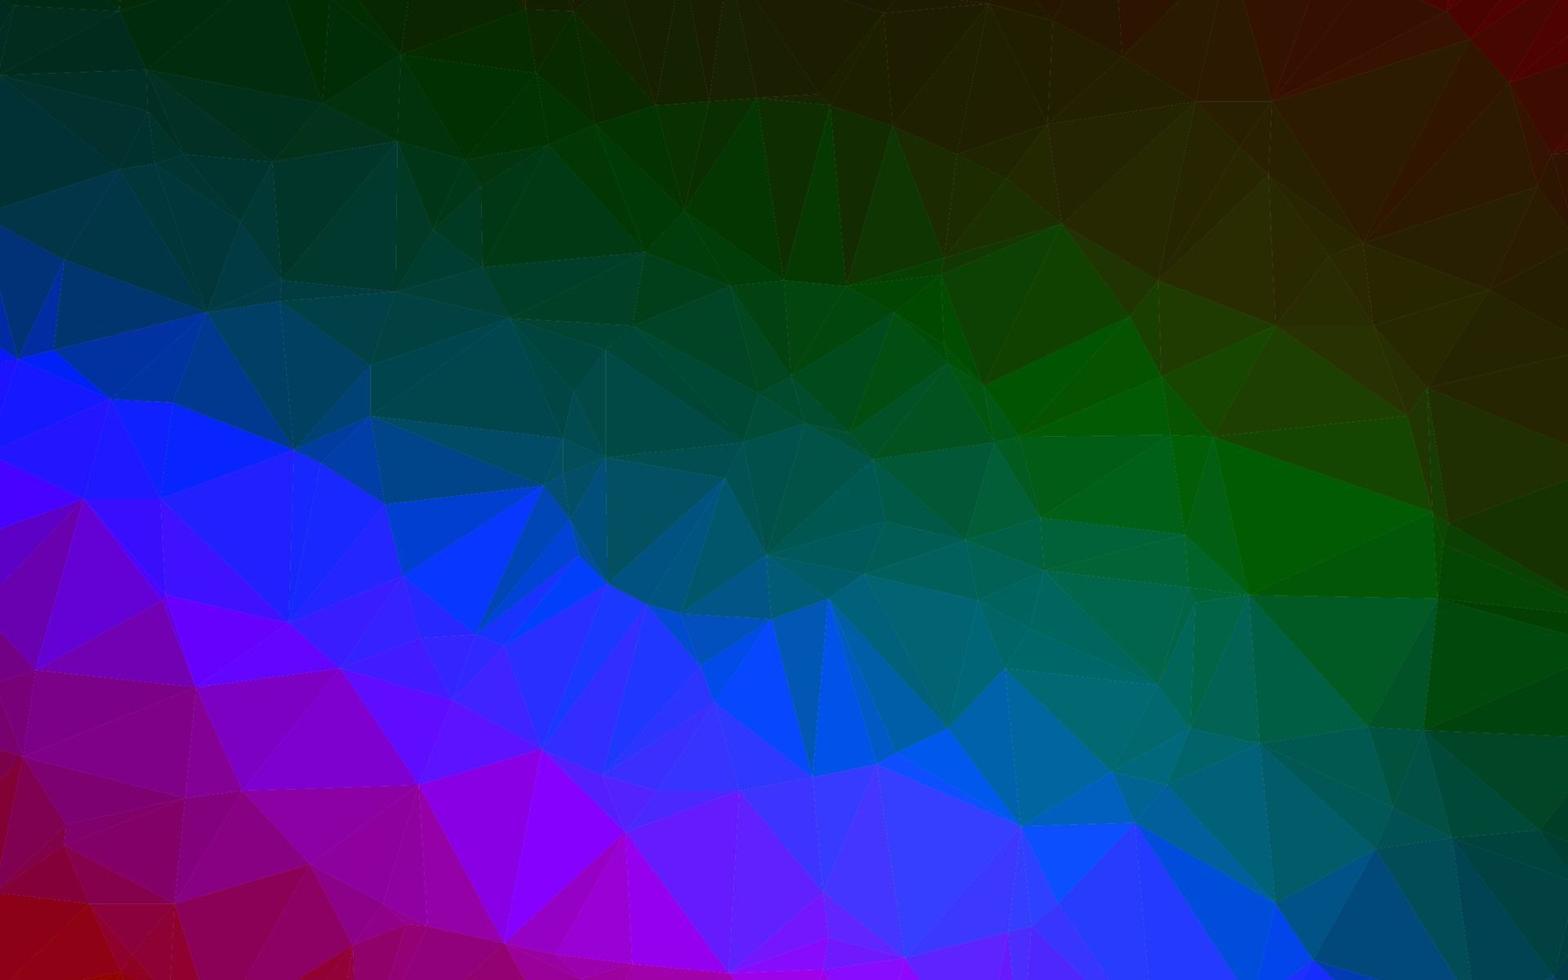 multicolor escuro, fundo poligonal do vetor do arco-íris.